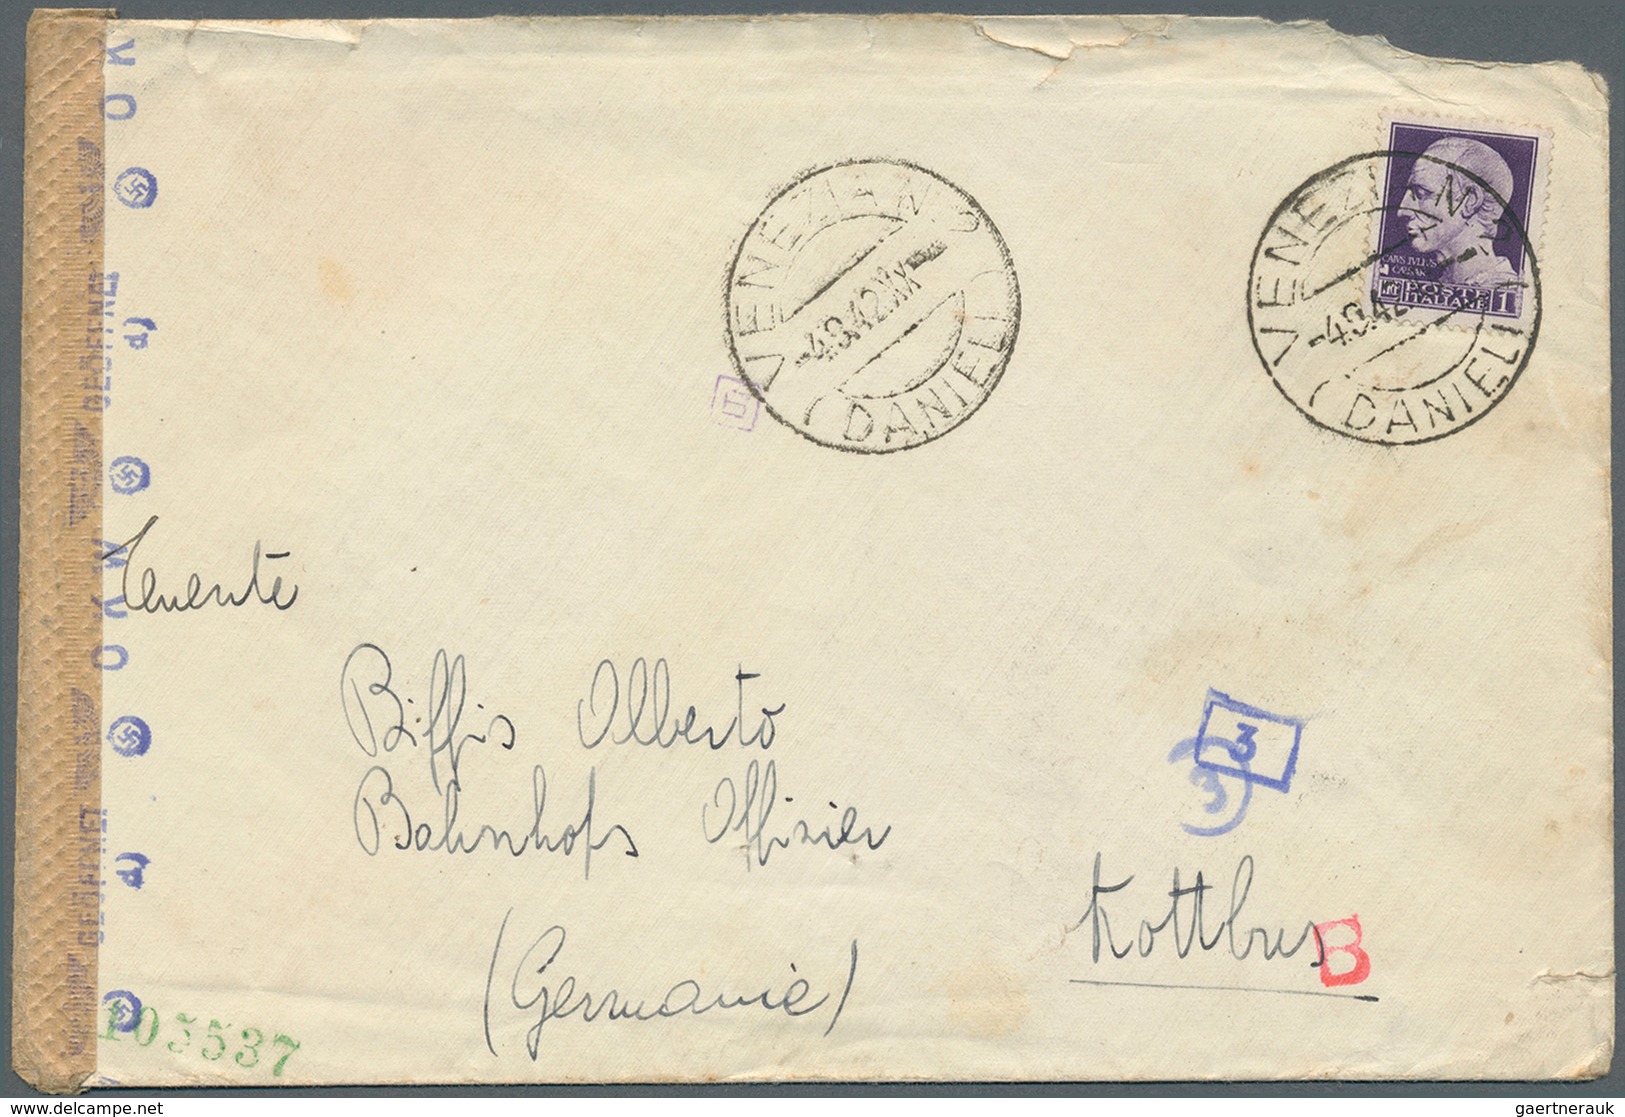 32039 Feldpost 2. Weltkrieg: 1939/1945, 66 teils bessere Belege, mit Briefen aus Italien an Feldpostnummer